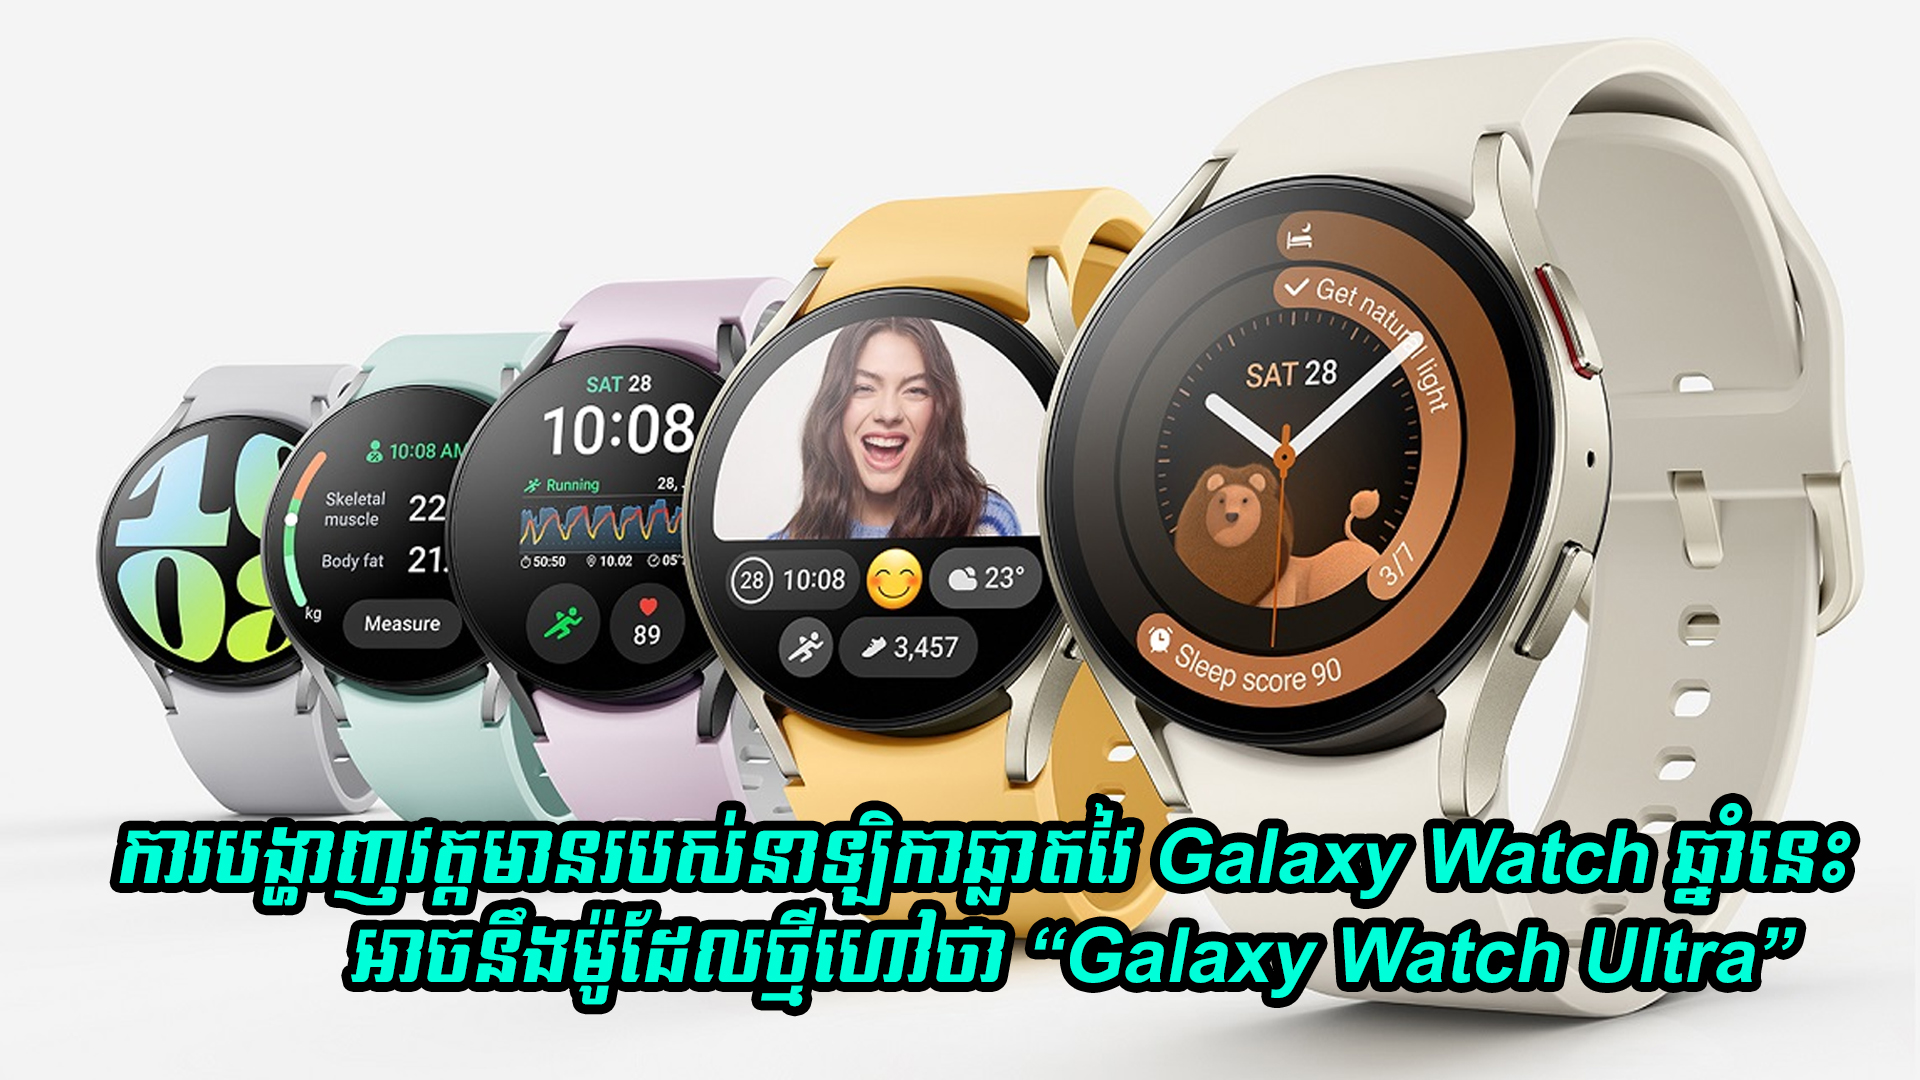 ការបង្ហាញវត្តមានរបស់នាឡិកាឆ្លាតវៃ  Galaxy Watch នៅក្នុងឆ្នាំនេះ អាចនឹងម៉ូដែលថ្មី “Galaxy Watch Ultra”